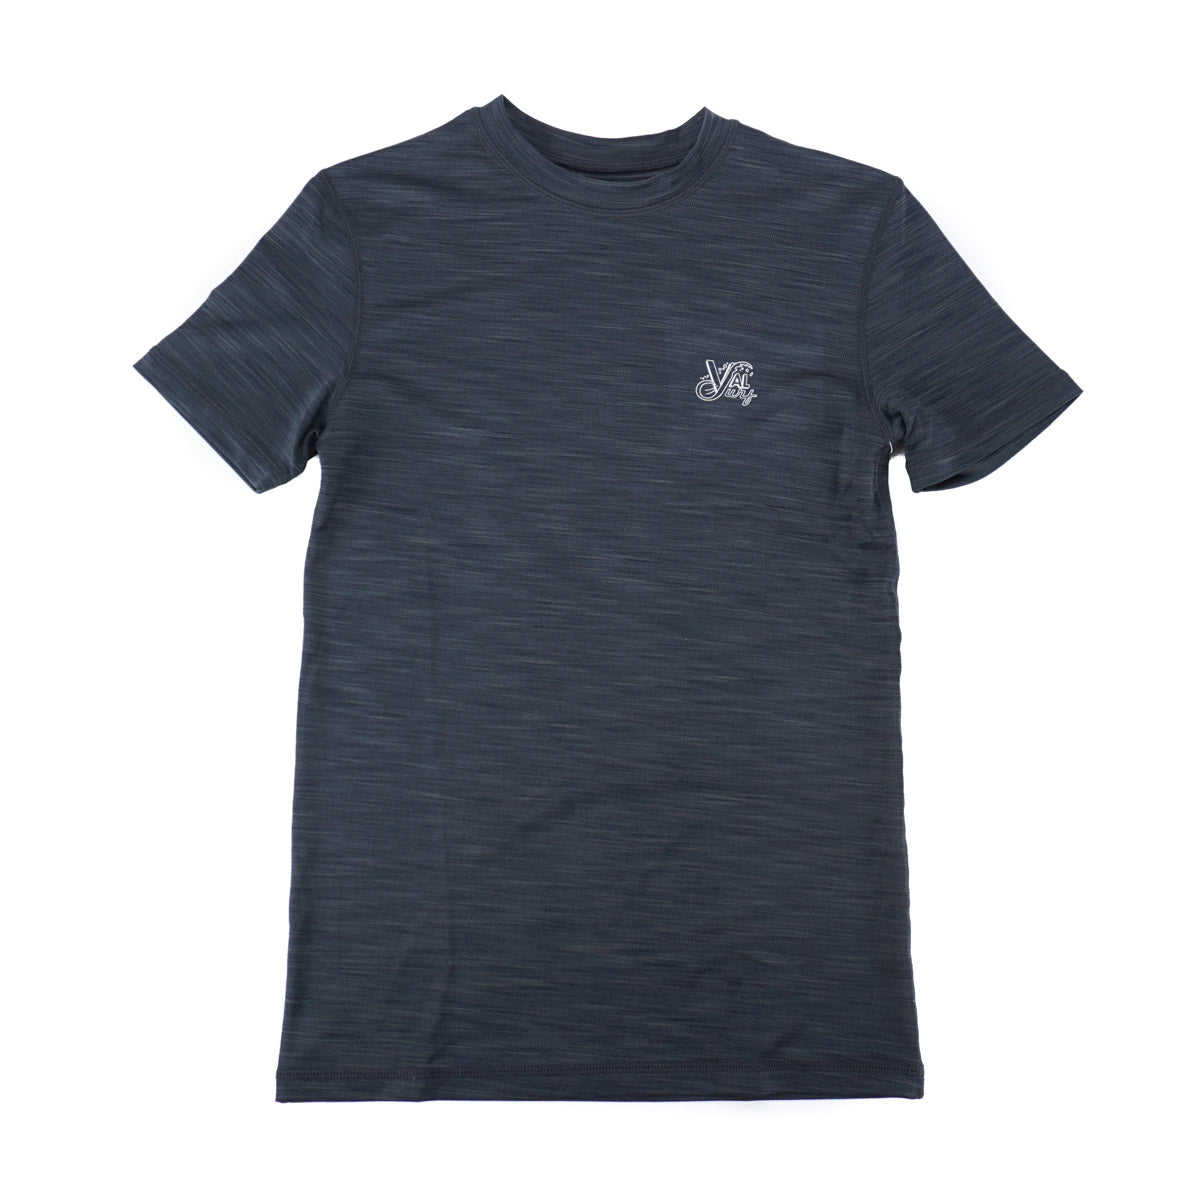 OG Logo Boys Hybrid S/S Sun Shirt - Charcoal